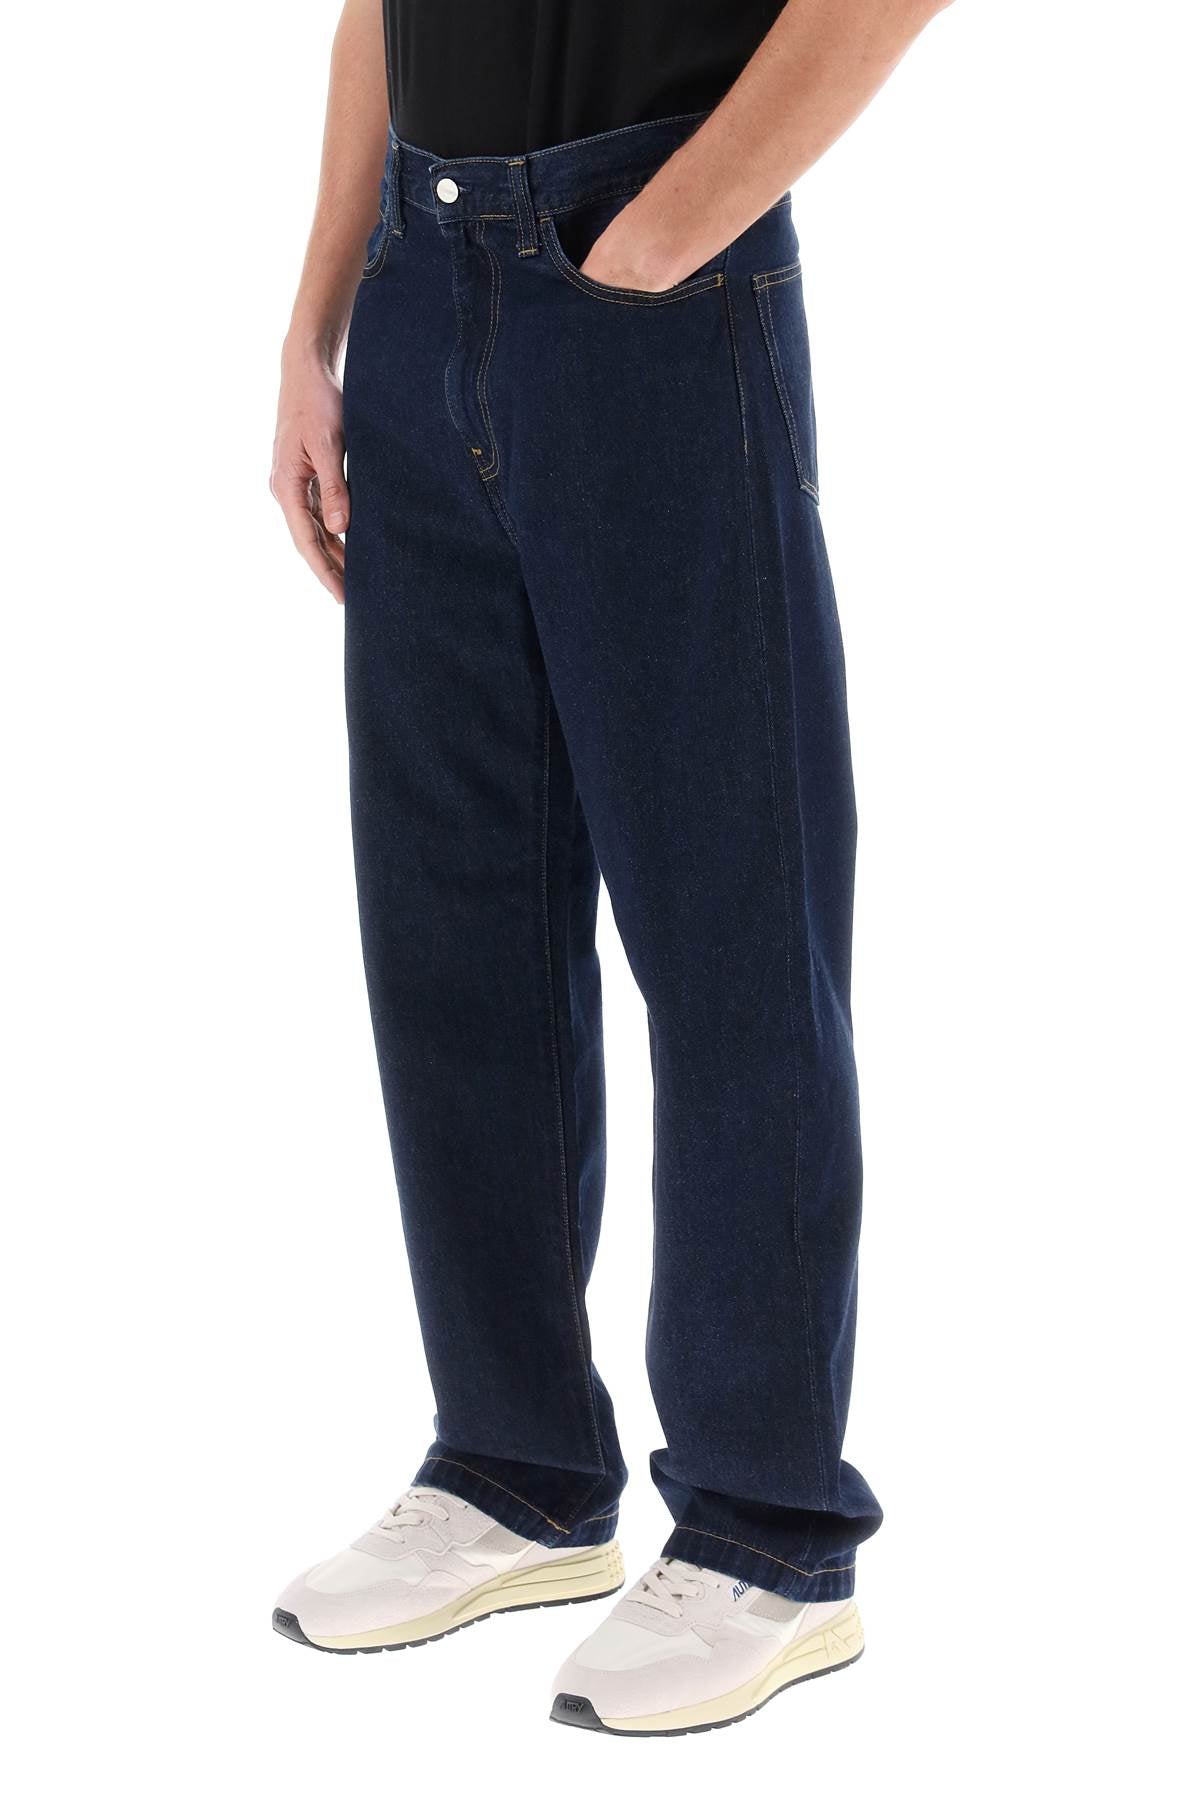 landon loose fit jeans-3